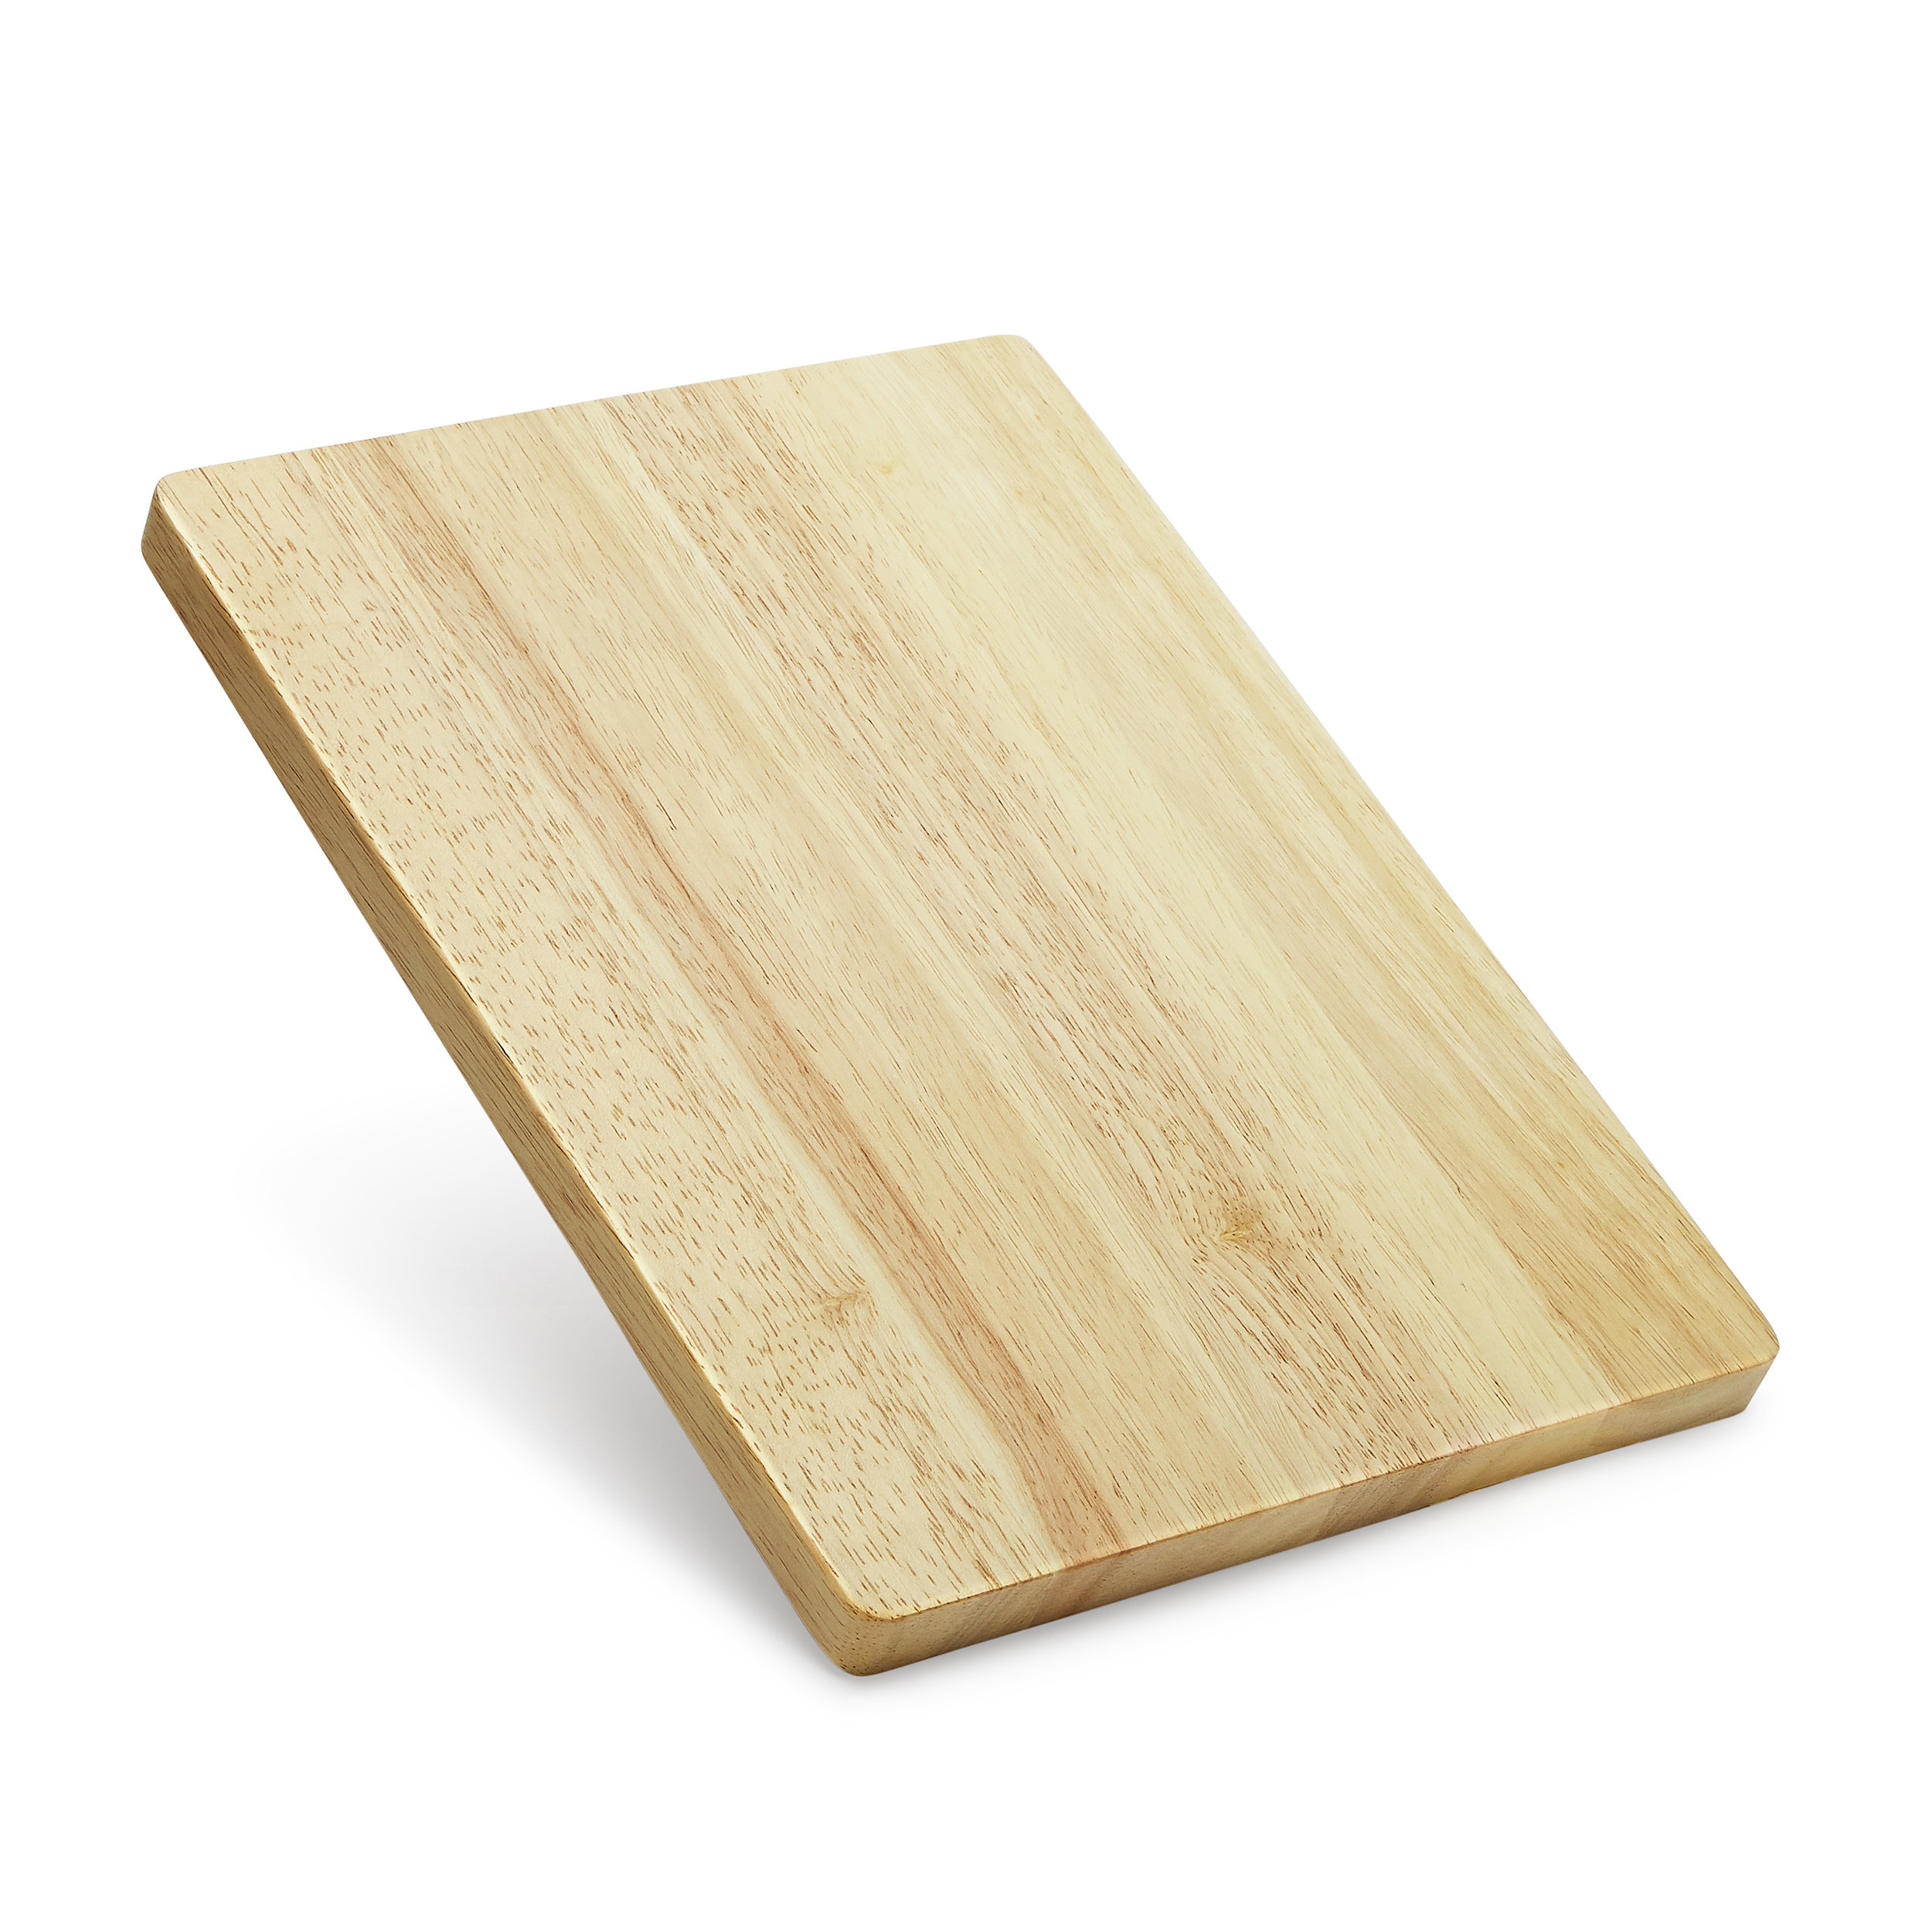 https://assets.wfcdn.com/im/35957855/compr-r85/2160/216077109/makerflo-14-x-10-rubber-wood-chopping-board-butcher-block-handmade-gifts.jpg